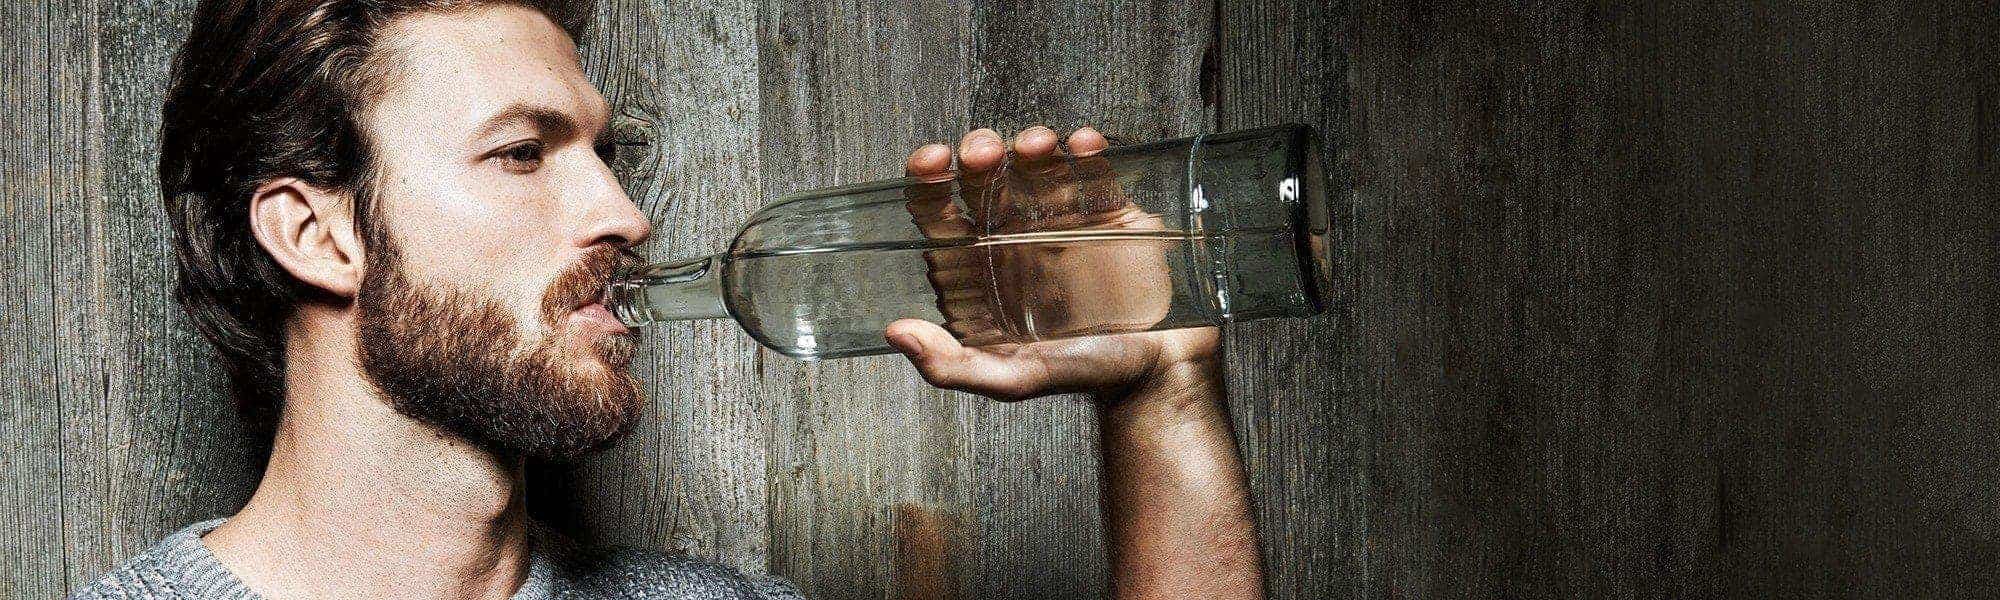 Bärtiger Mann trinkt aus Wasserfalsche vor einer Holzwand